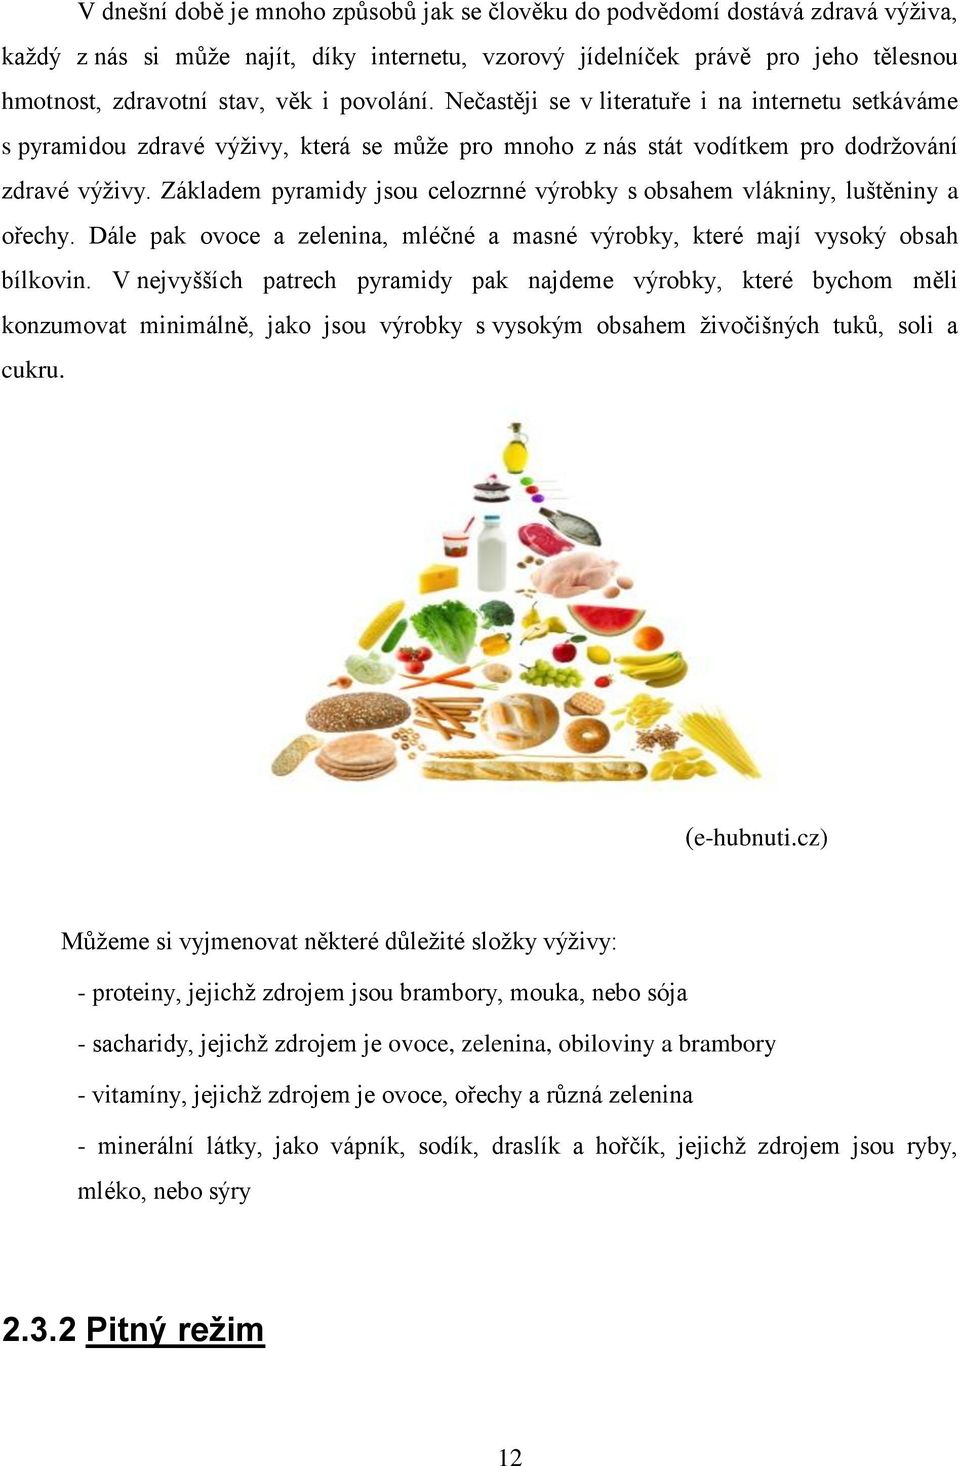 Základem pyramidy jsou celozrnné výrobky s obsahem vlákniny, luštěniny a ořechy. Dále pak ovoce a zelenina, mléčné a masné výrobky, které mají vysoký obsah bílkovin.